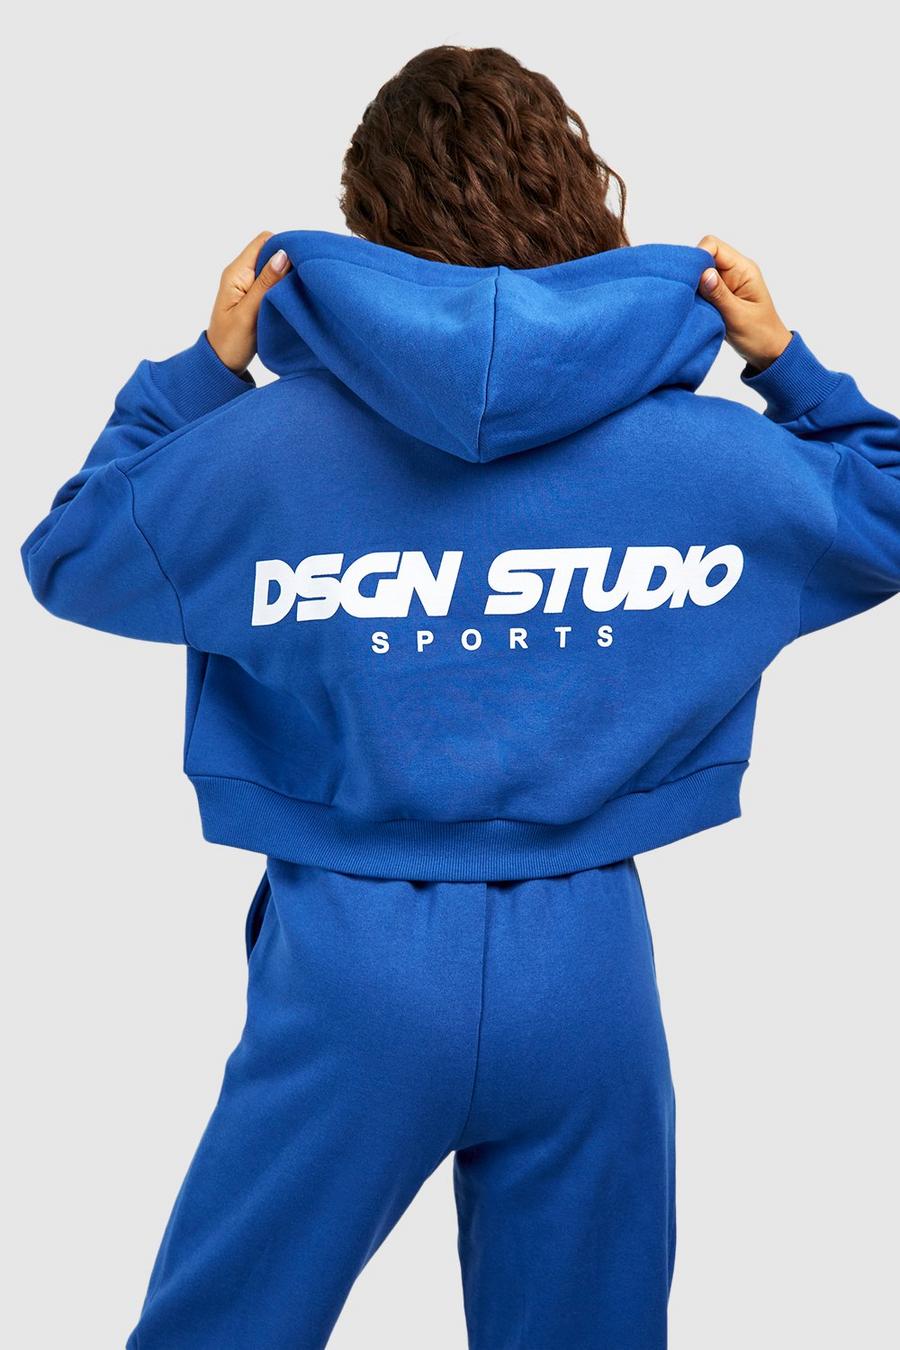 Kastiger Dsgn Studio Sports Hoodie mit Reißverschluss, Cobalt